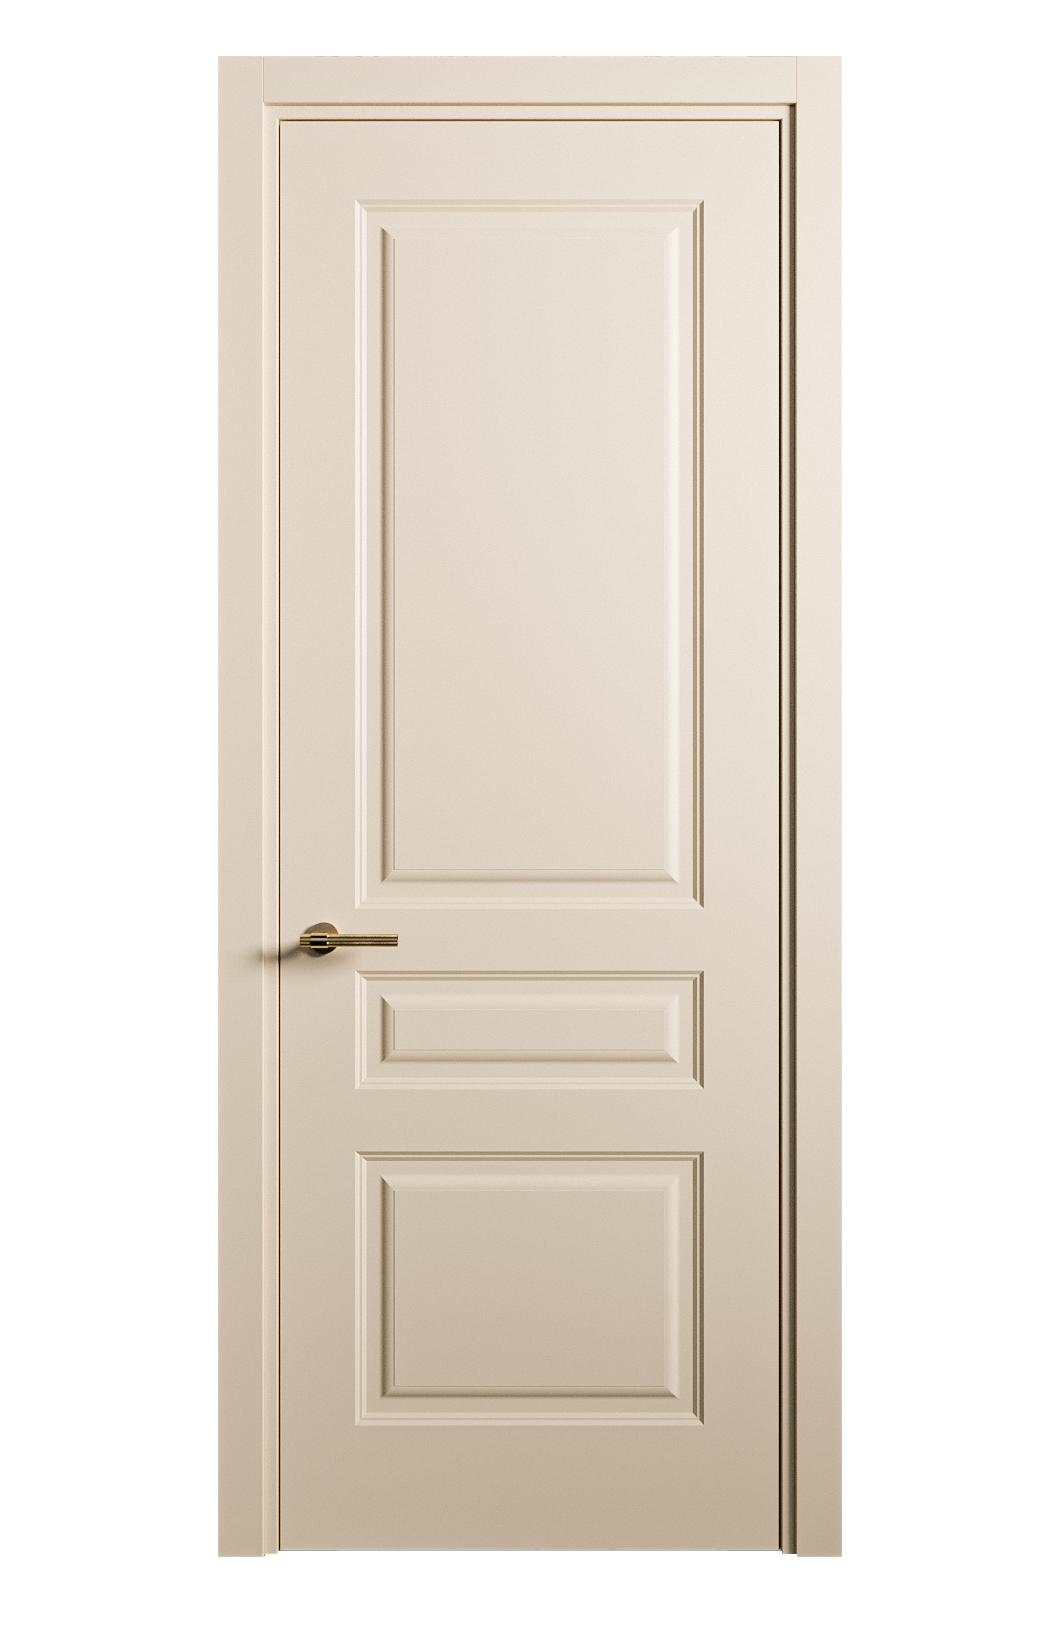 Межкомнатная дверь Вита-2 глухая эмаль ral 1015 26369